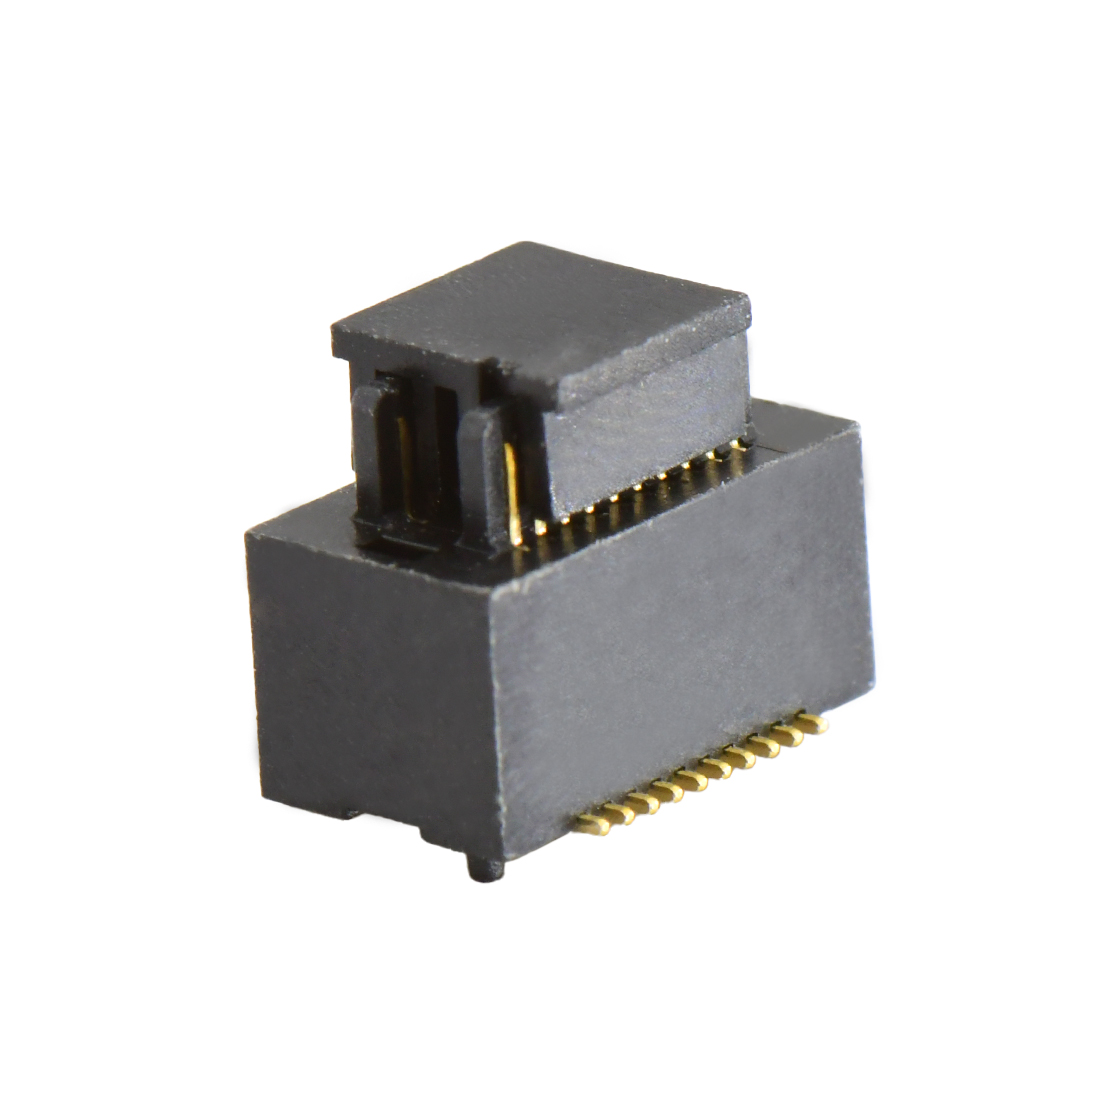 B0502板对板连接器Pitch 0.5 H4.0mm双槽双排 SMT型公座 20Pin黑色 Gold flash